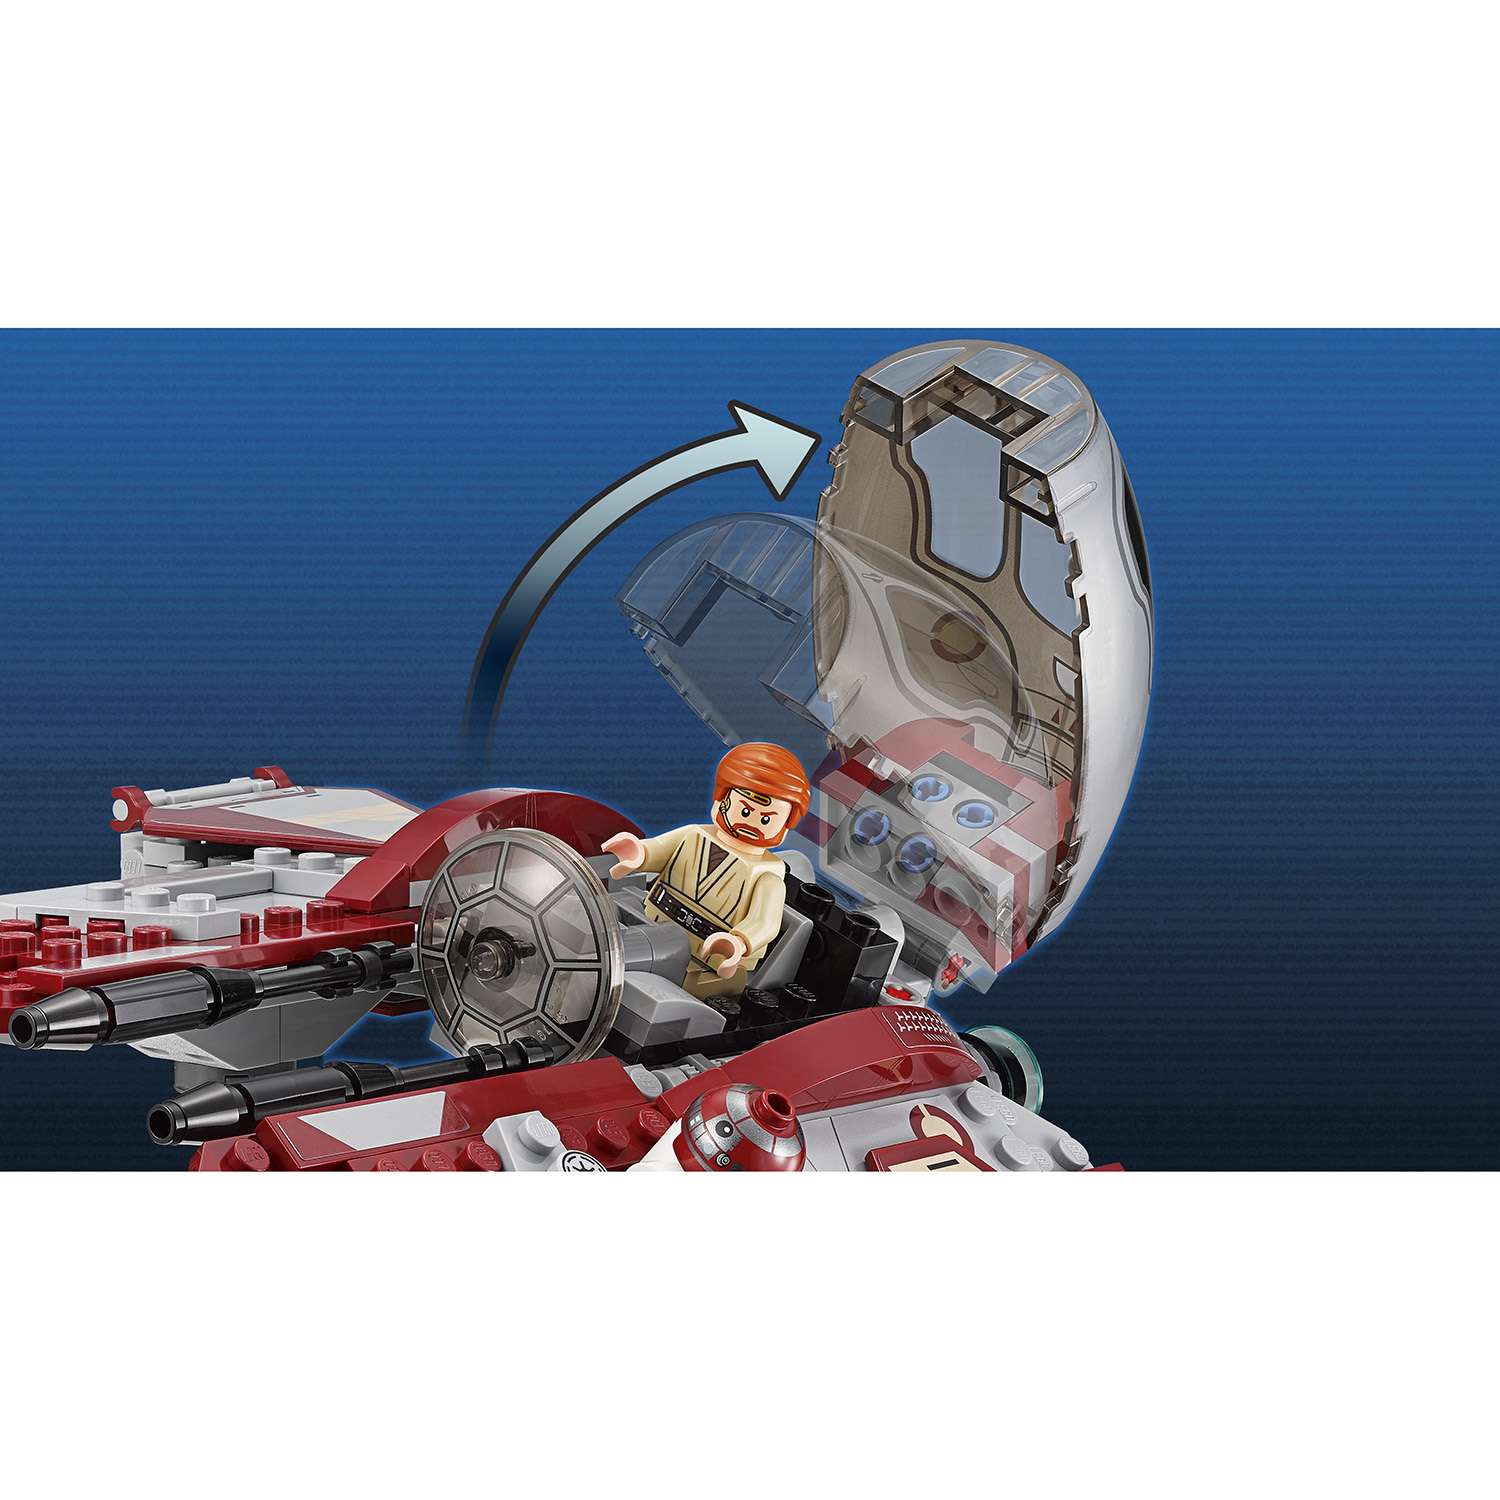 Конструктор LEGO Star Wars TM Перехватчик джедаев Оби-Вана Кеноби™ (75135) - фото 9